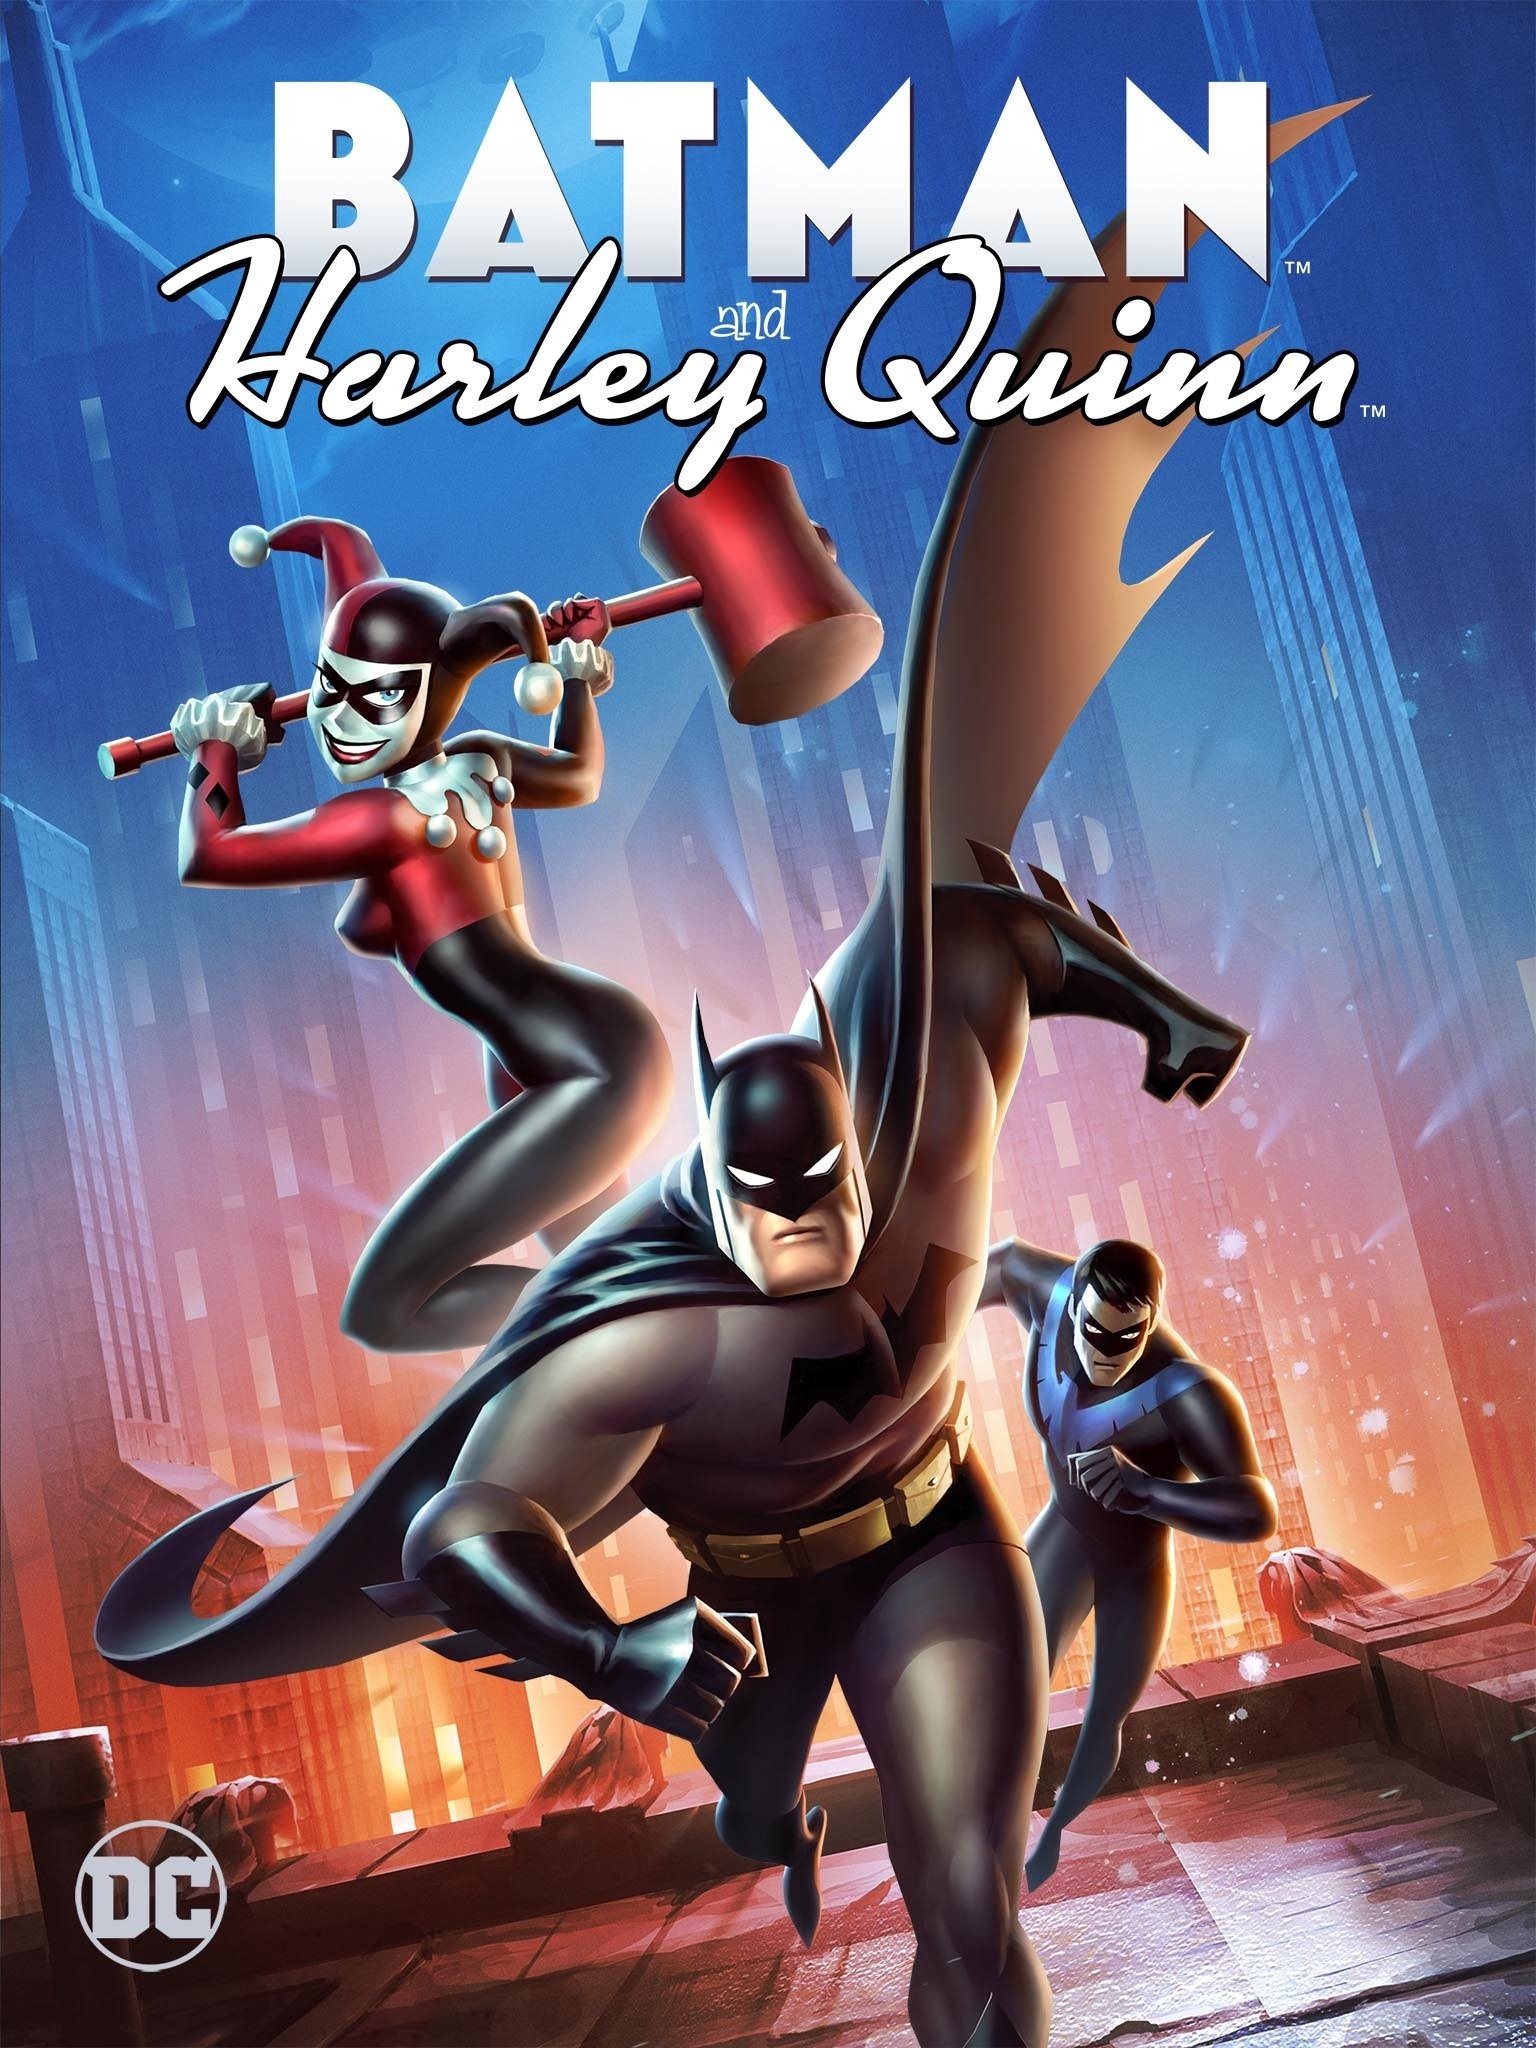 Batman and harley quinn